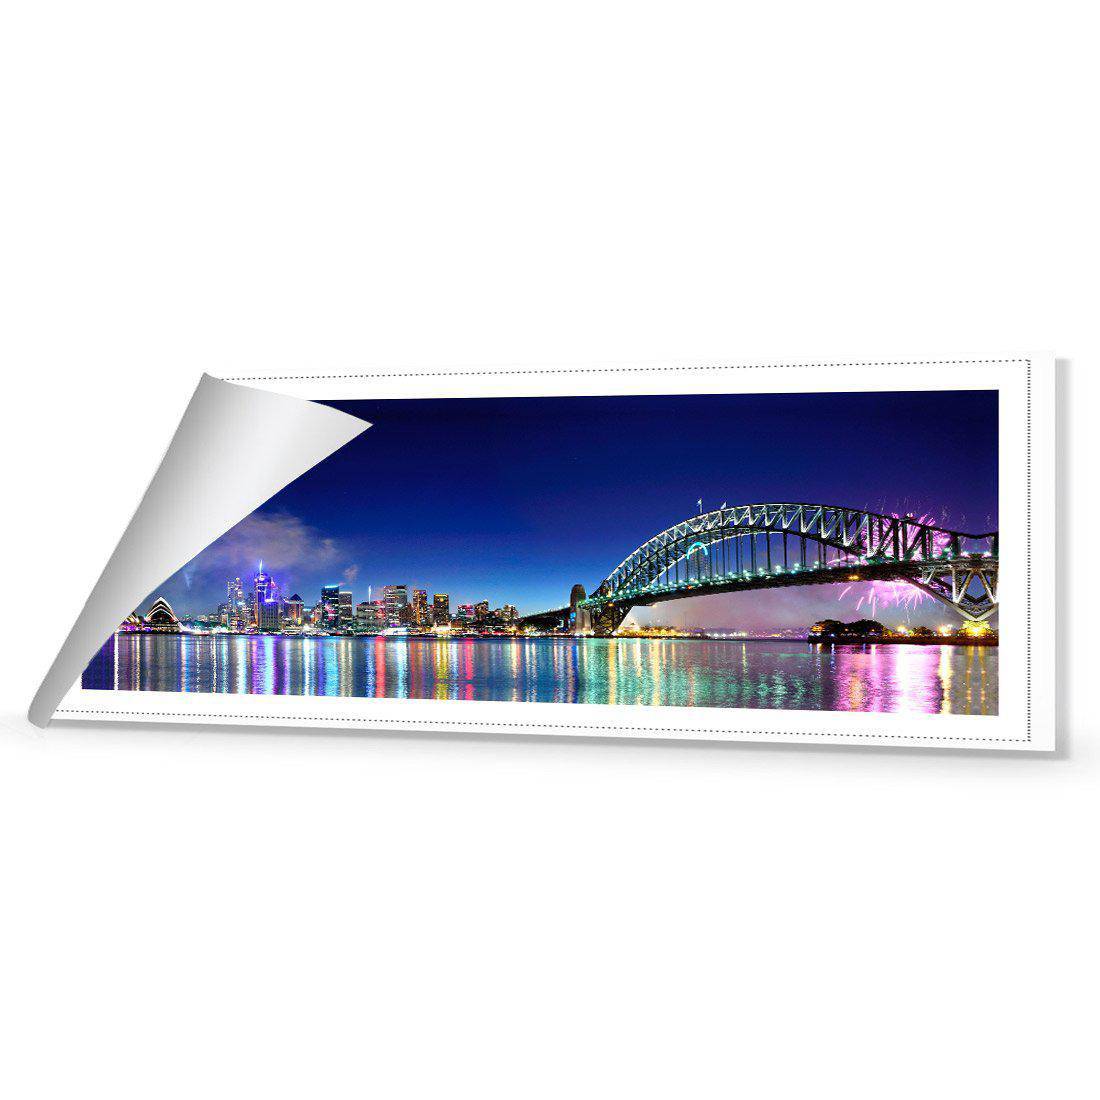 Sydney Celebration Canvas Art-Canvas-Wall Art Designs-60x20cm-Rolled Canvas-Wall Art Designs